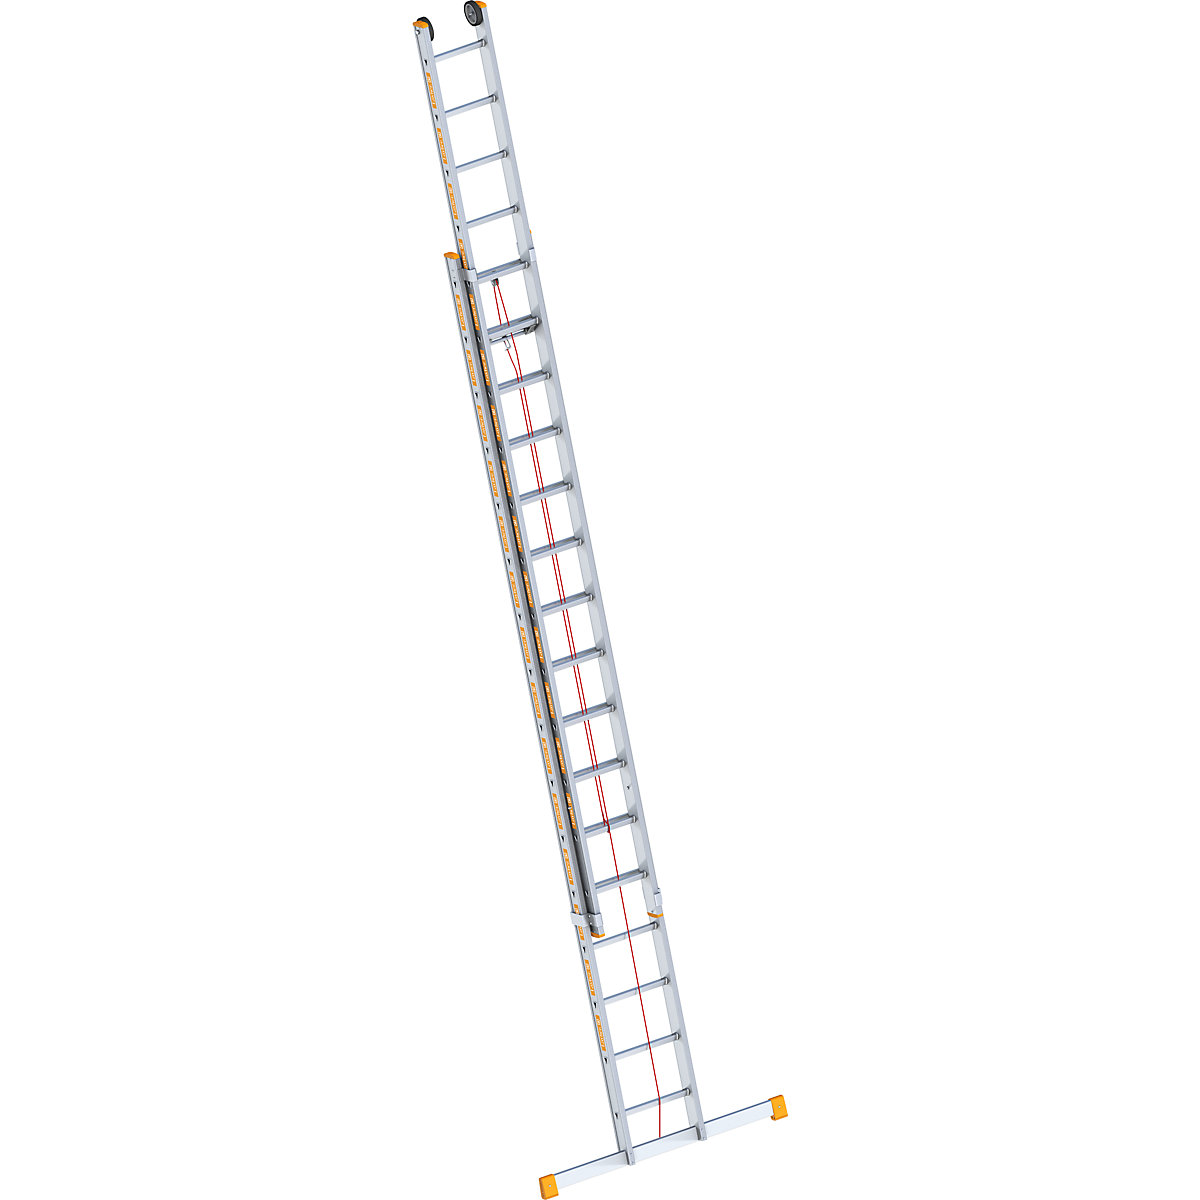 Layher Alu-Seilzugleiter, 2-teilig, ausziehbar, inkl. Traverse, 2 x 16 Sprossen